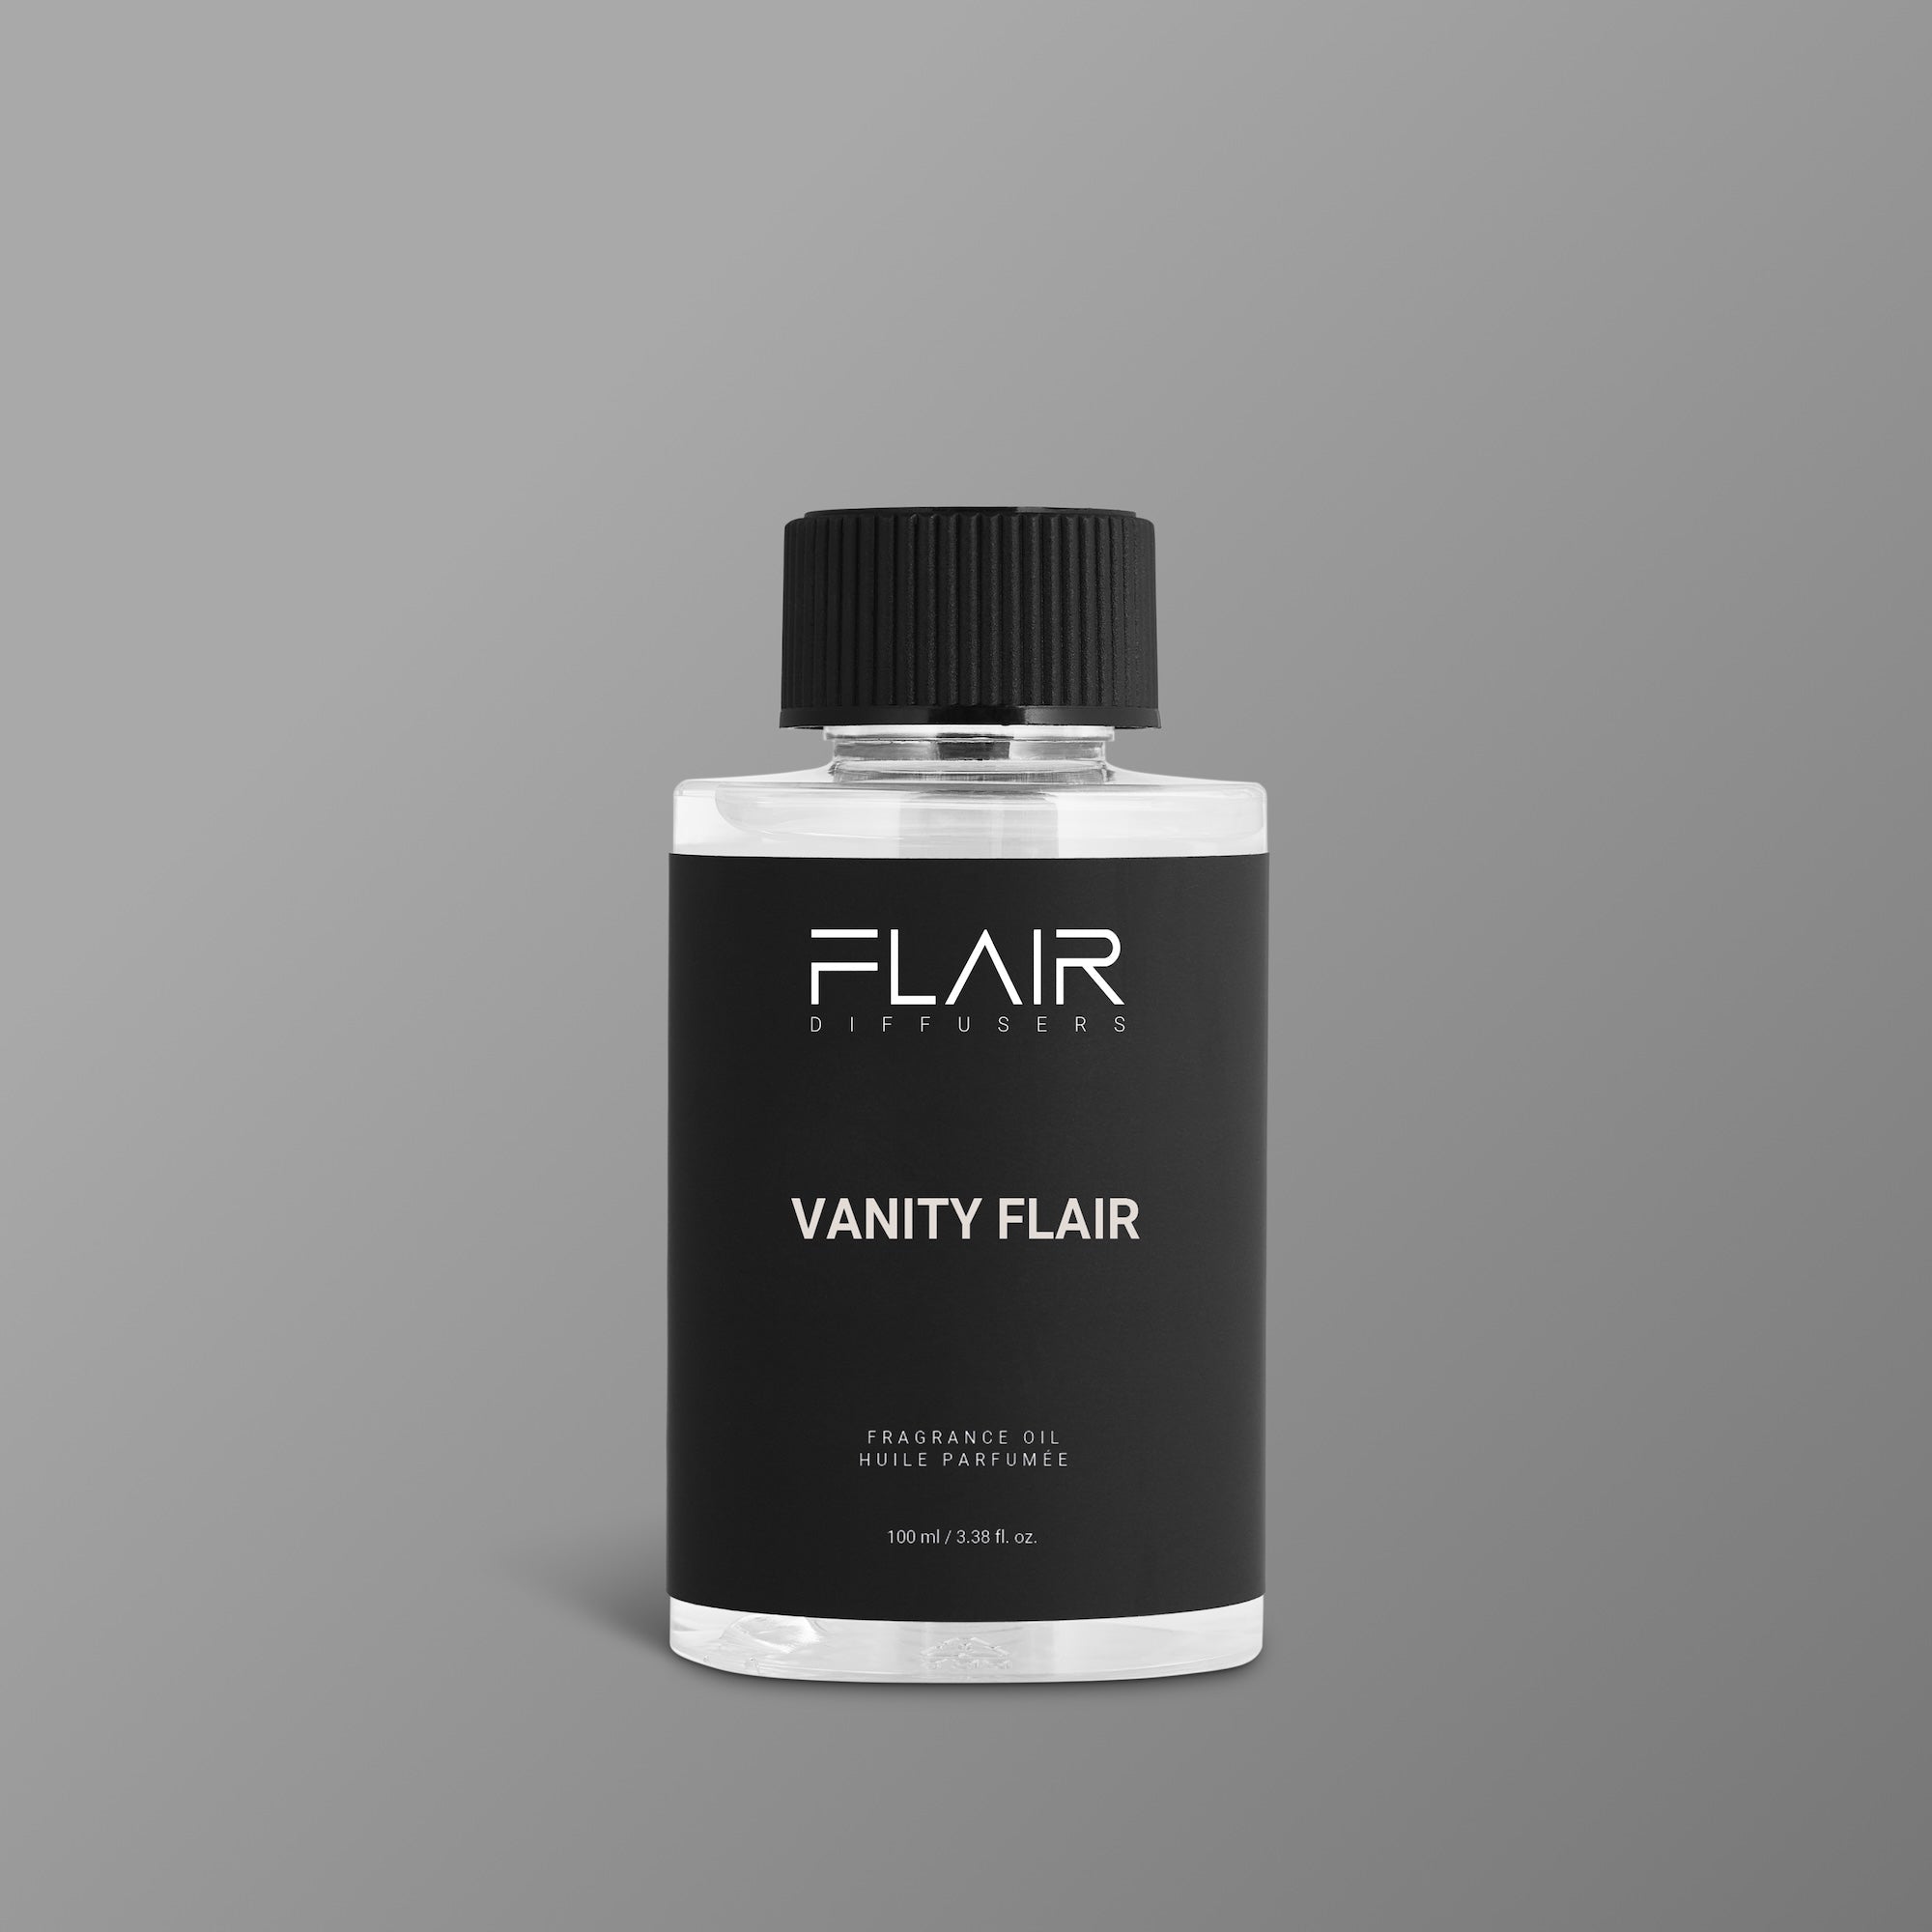 Vanity Flair